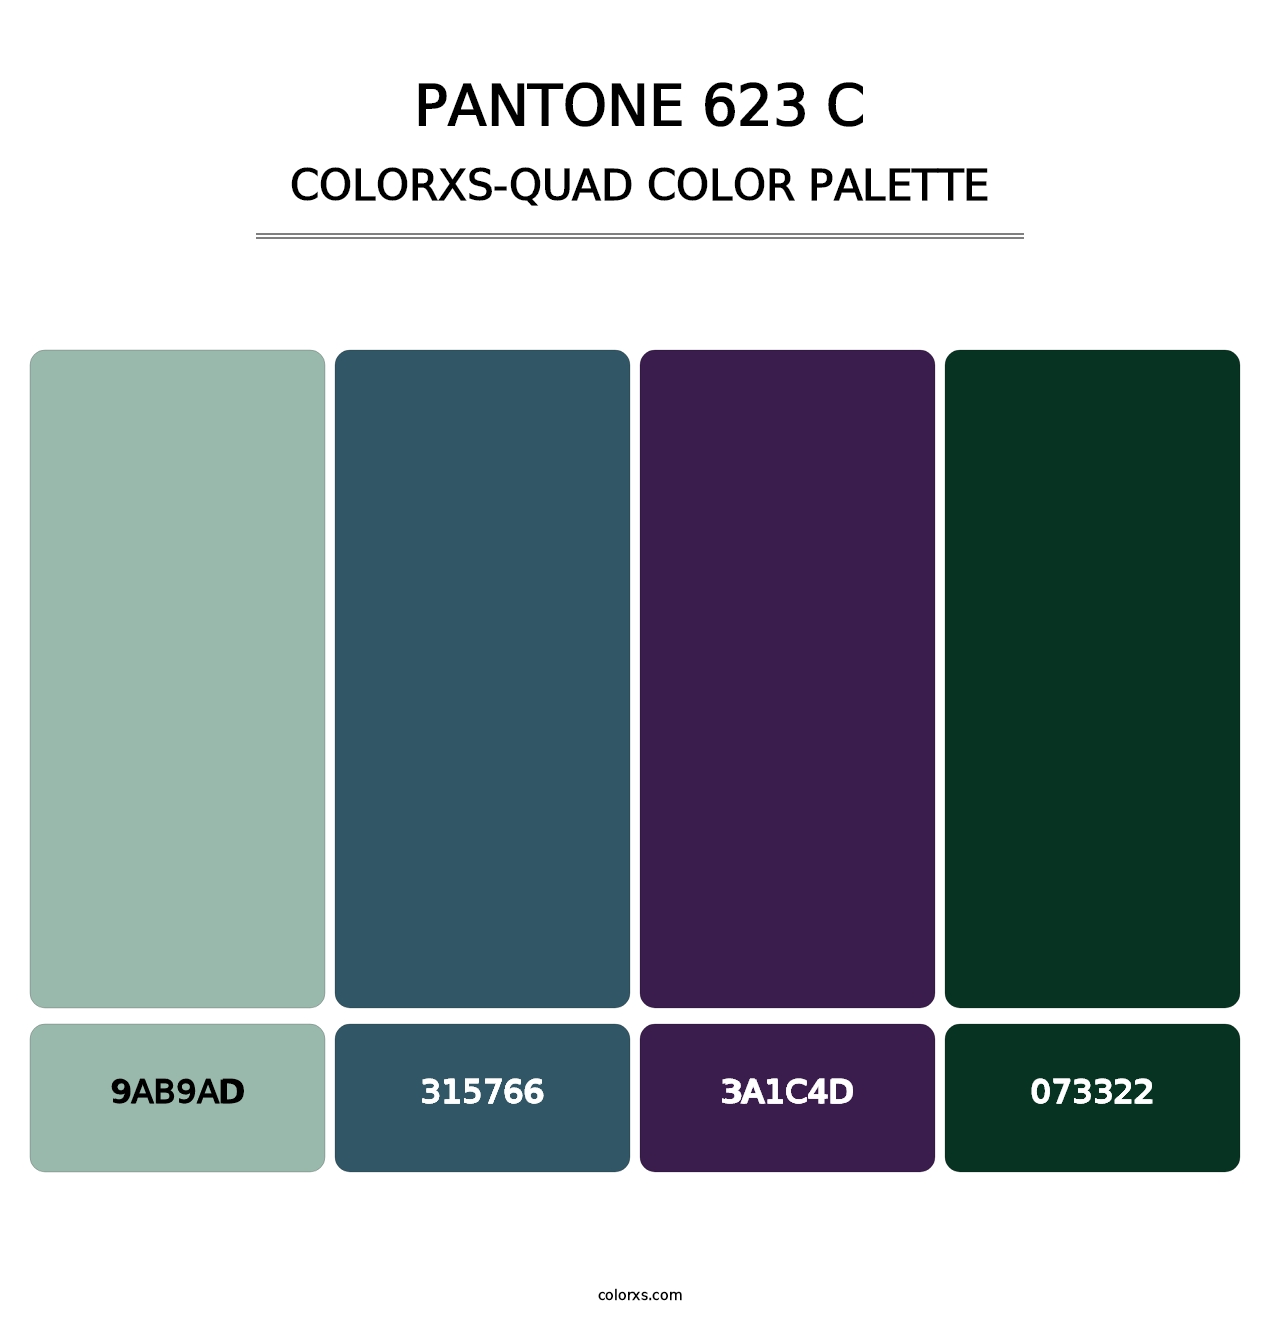 PANTONE 623 C - Colorxs Quad Palette